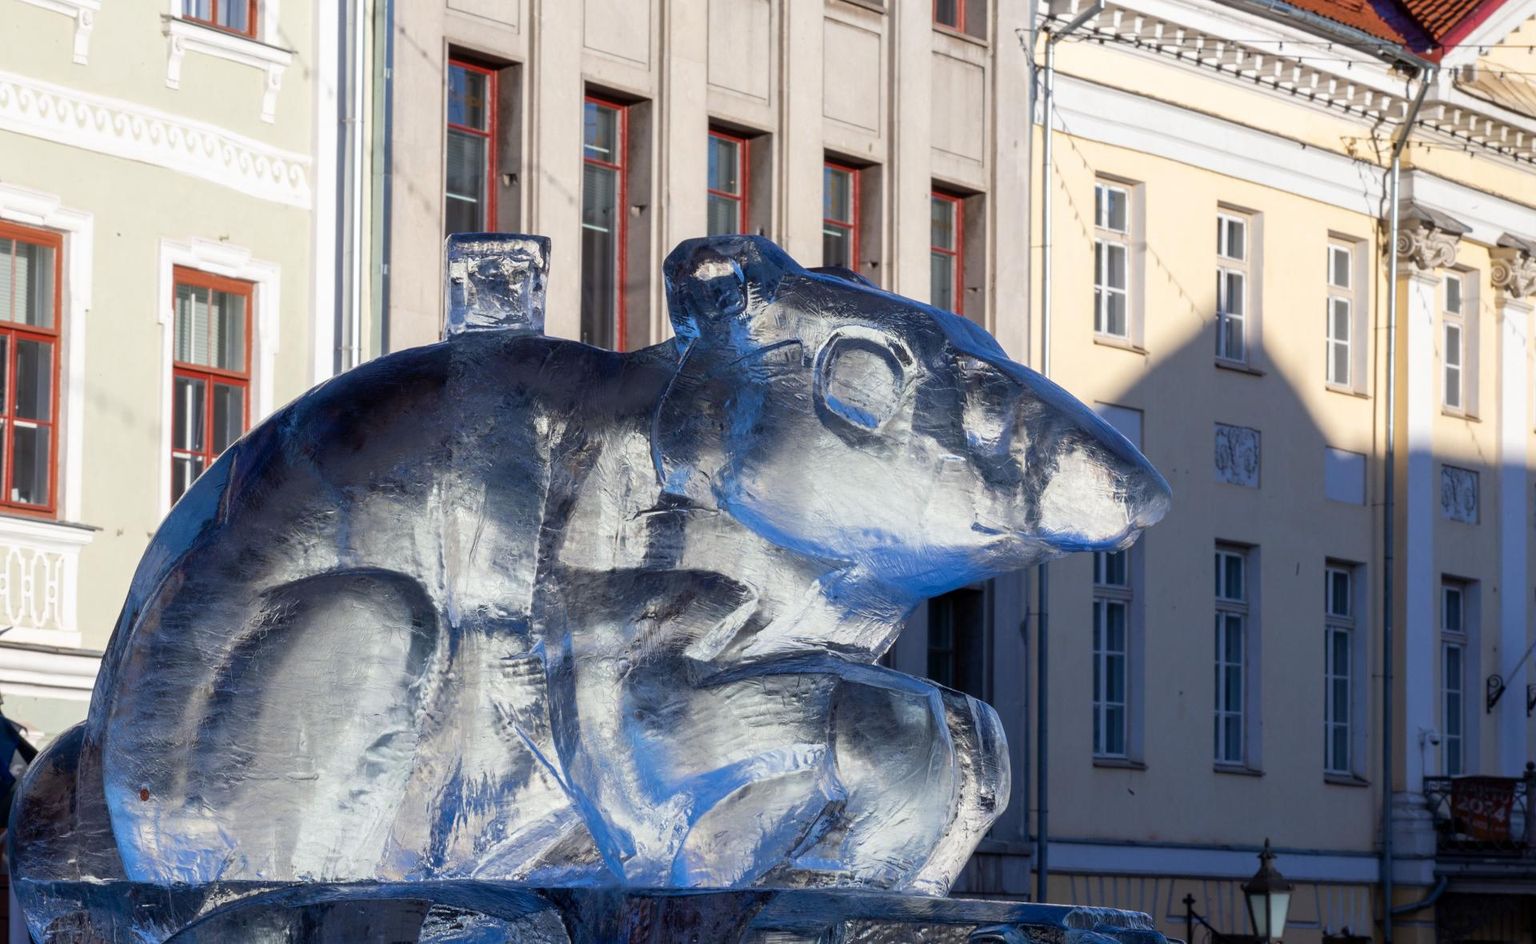 25. jaanuaril avati Tartu Raekoja platsil Põvvat Kama loodud jääst rotiskulptuur ning kuulutati alanuks Hiina kalendri valge metallroti aasta.